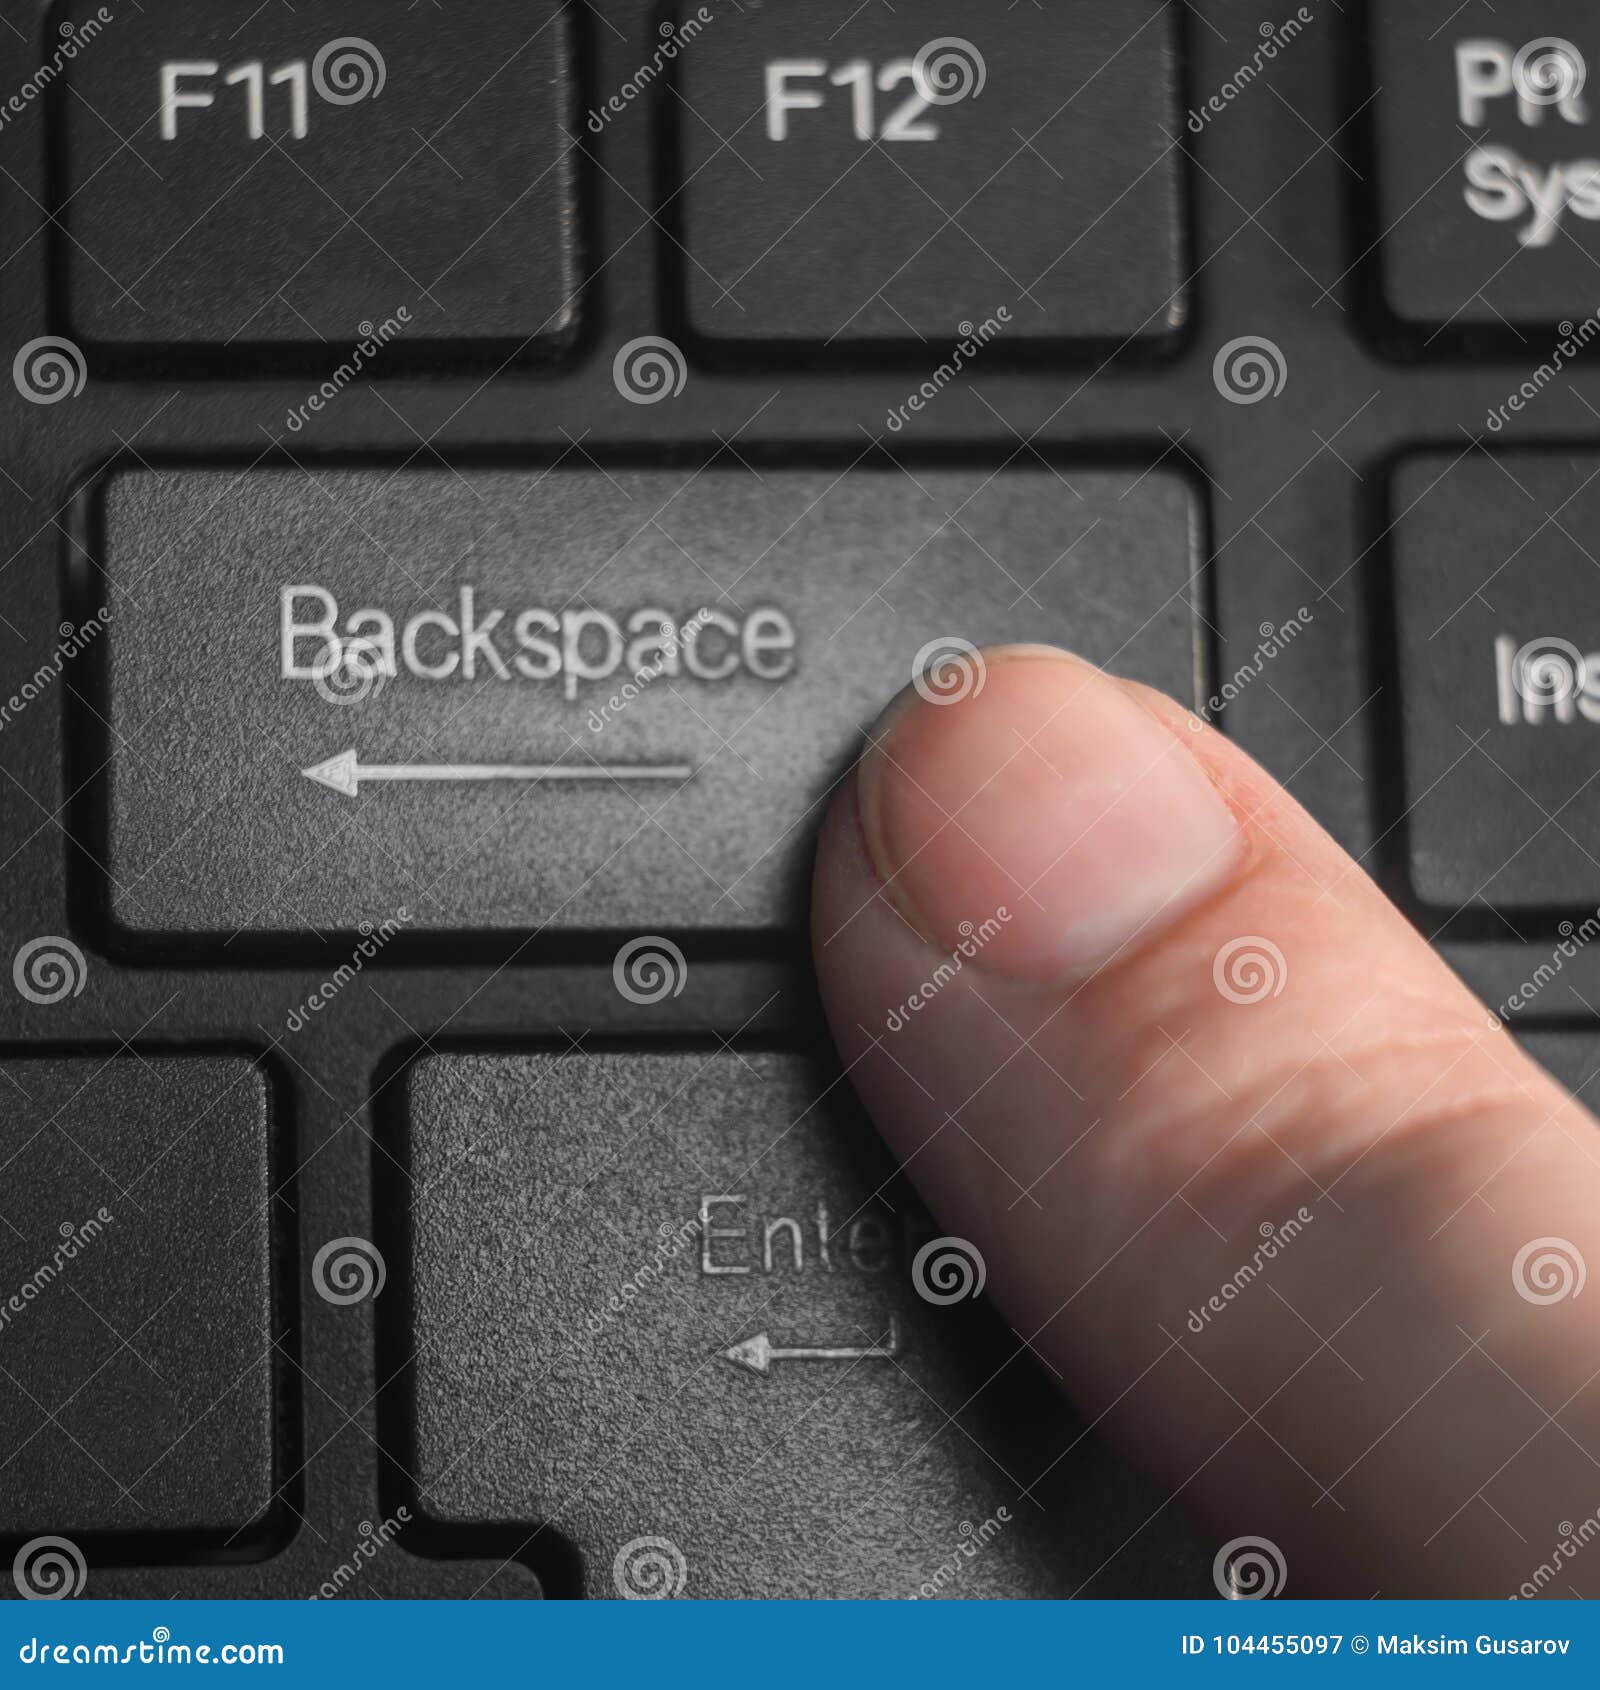 Backspace что делает. Клавиша бэкспейс. Кнопка стереть на клавиатуре. Клавиша Backspace на клавиатуре. Кнопка delete на клавиатуре.